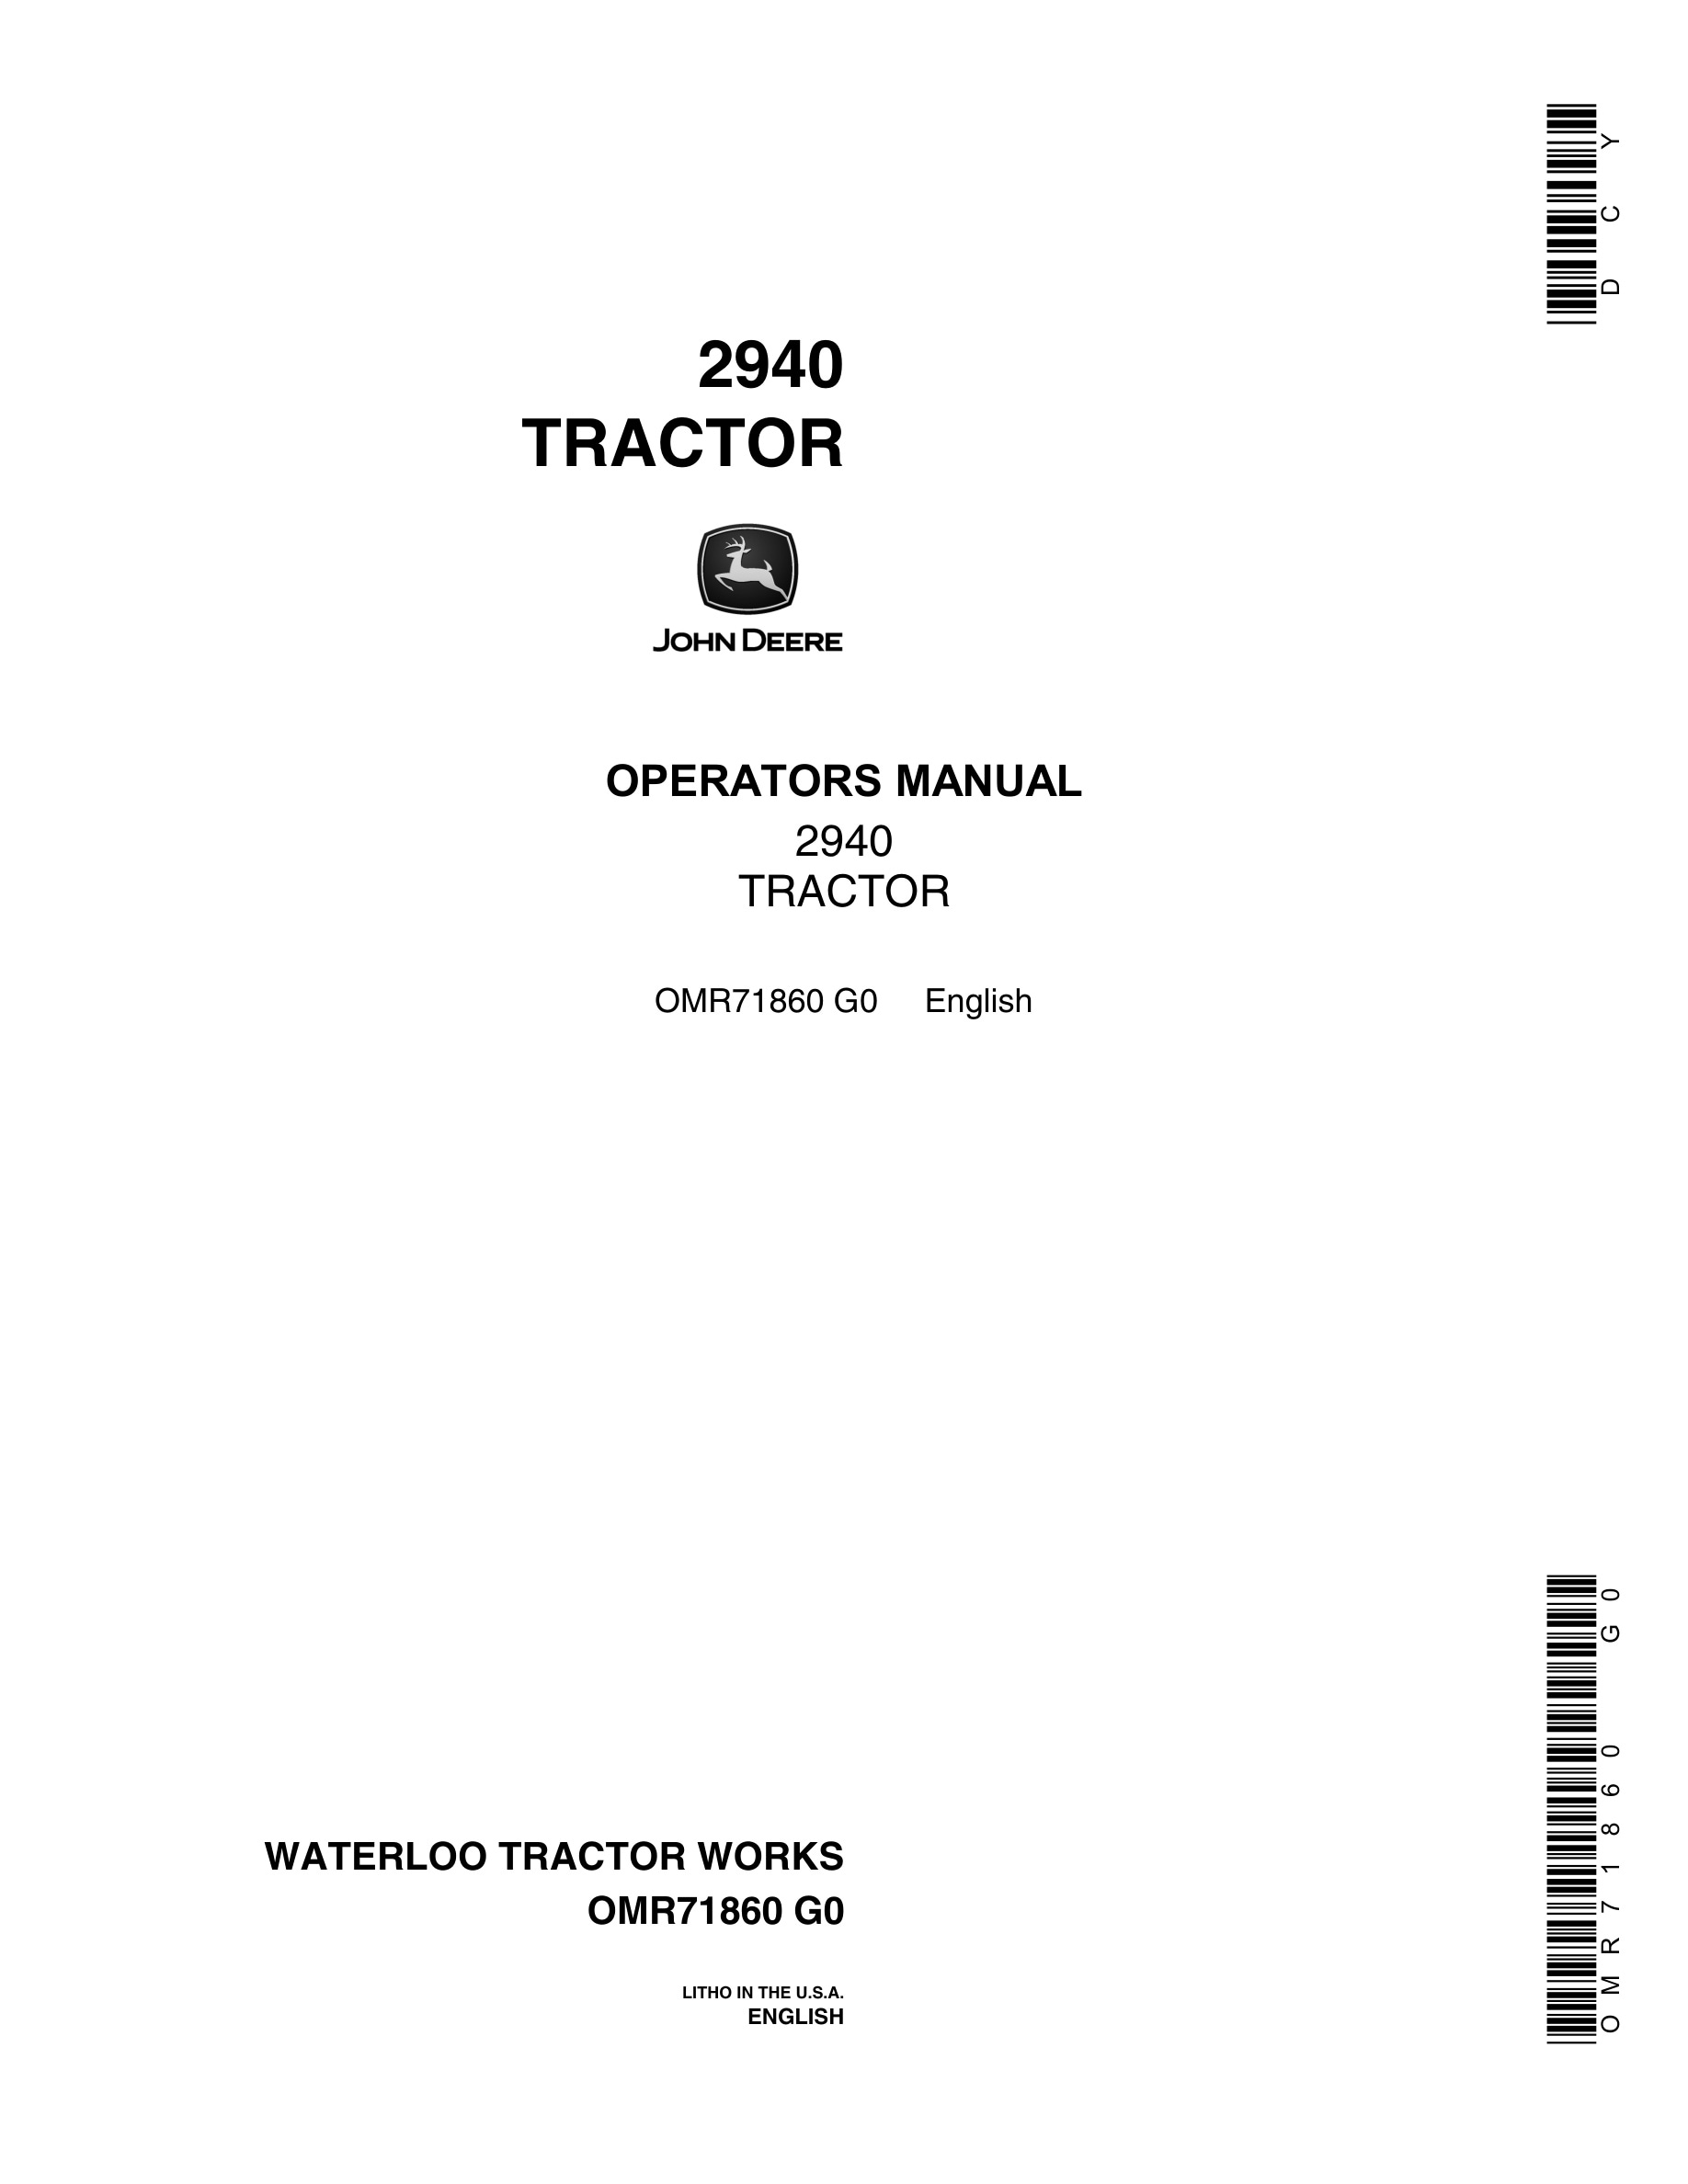 John Deere 2940 Tractor Operator Manual OMR7186-1